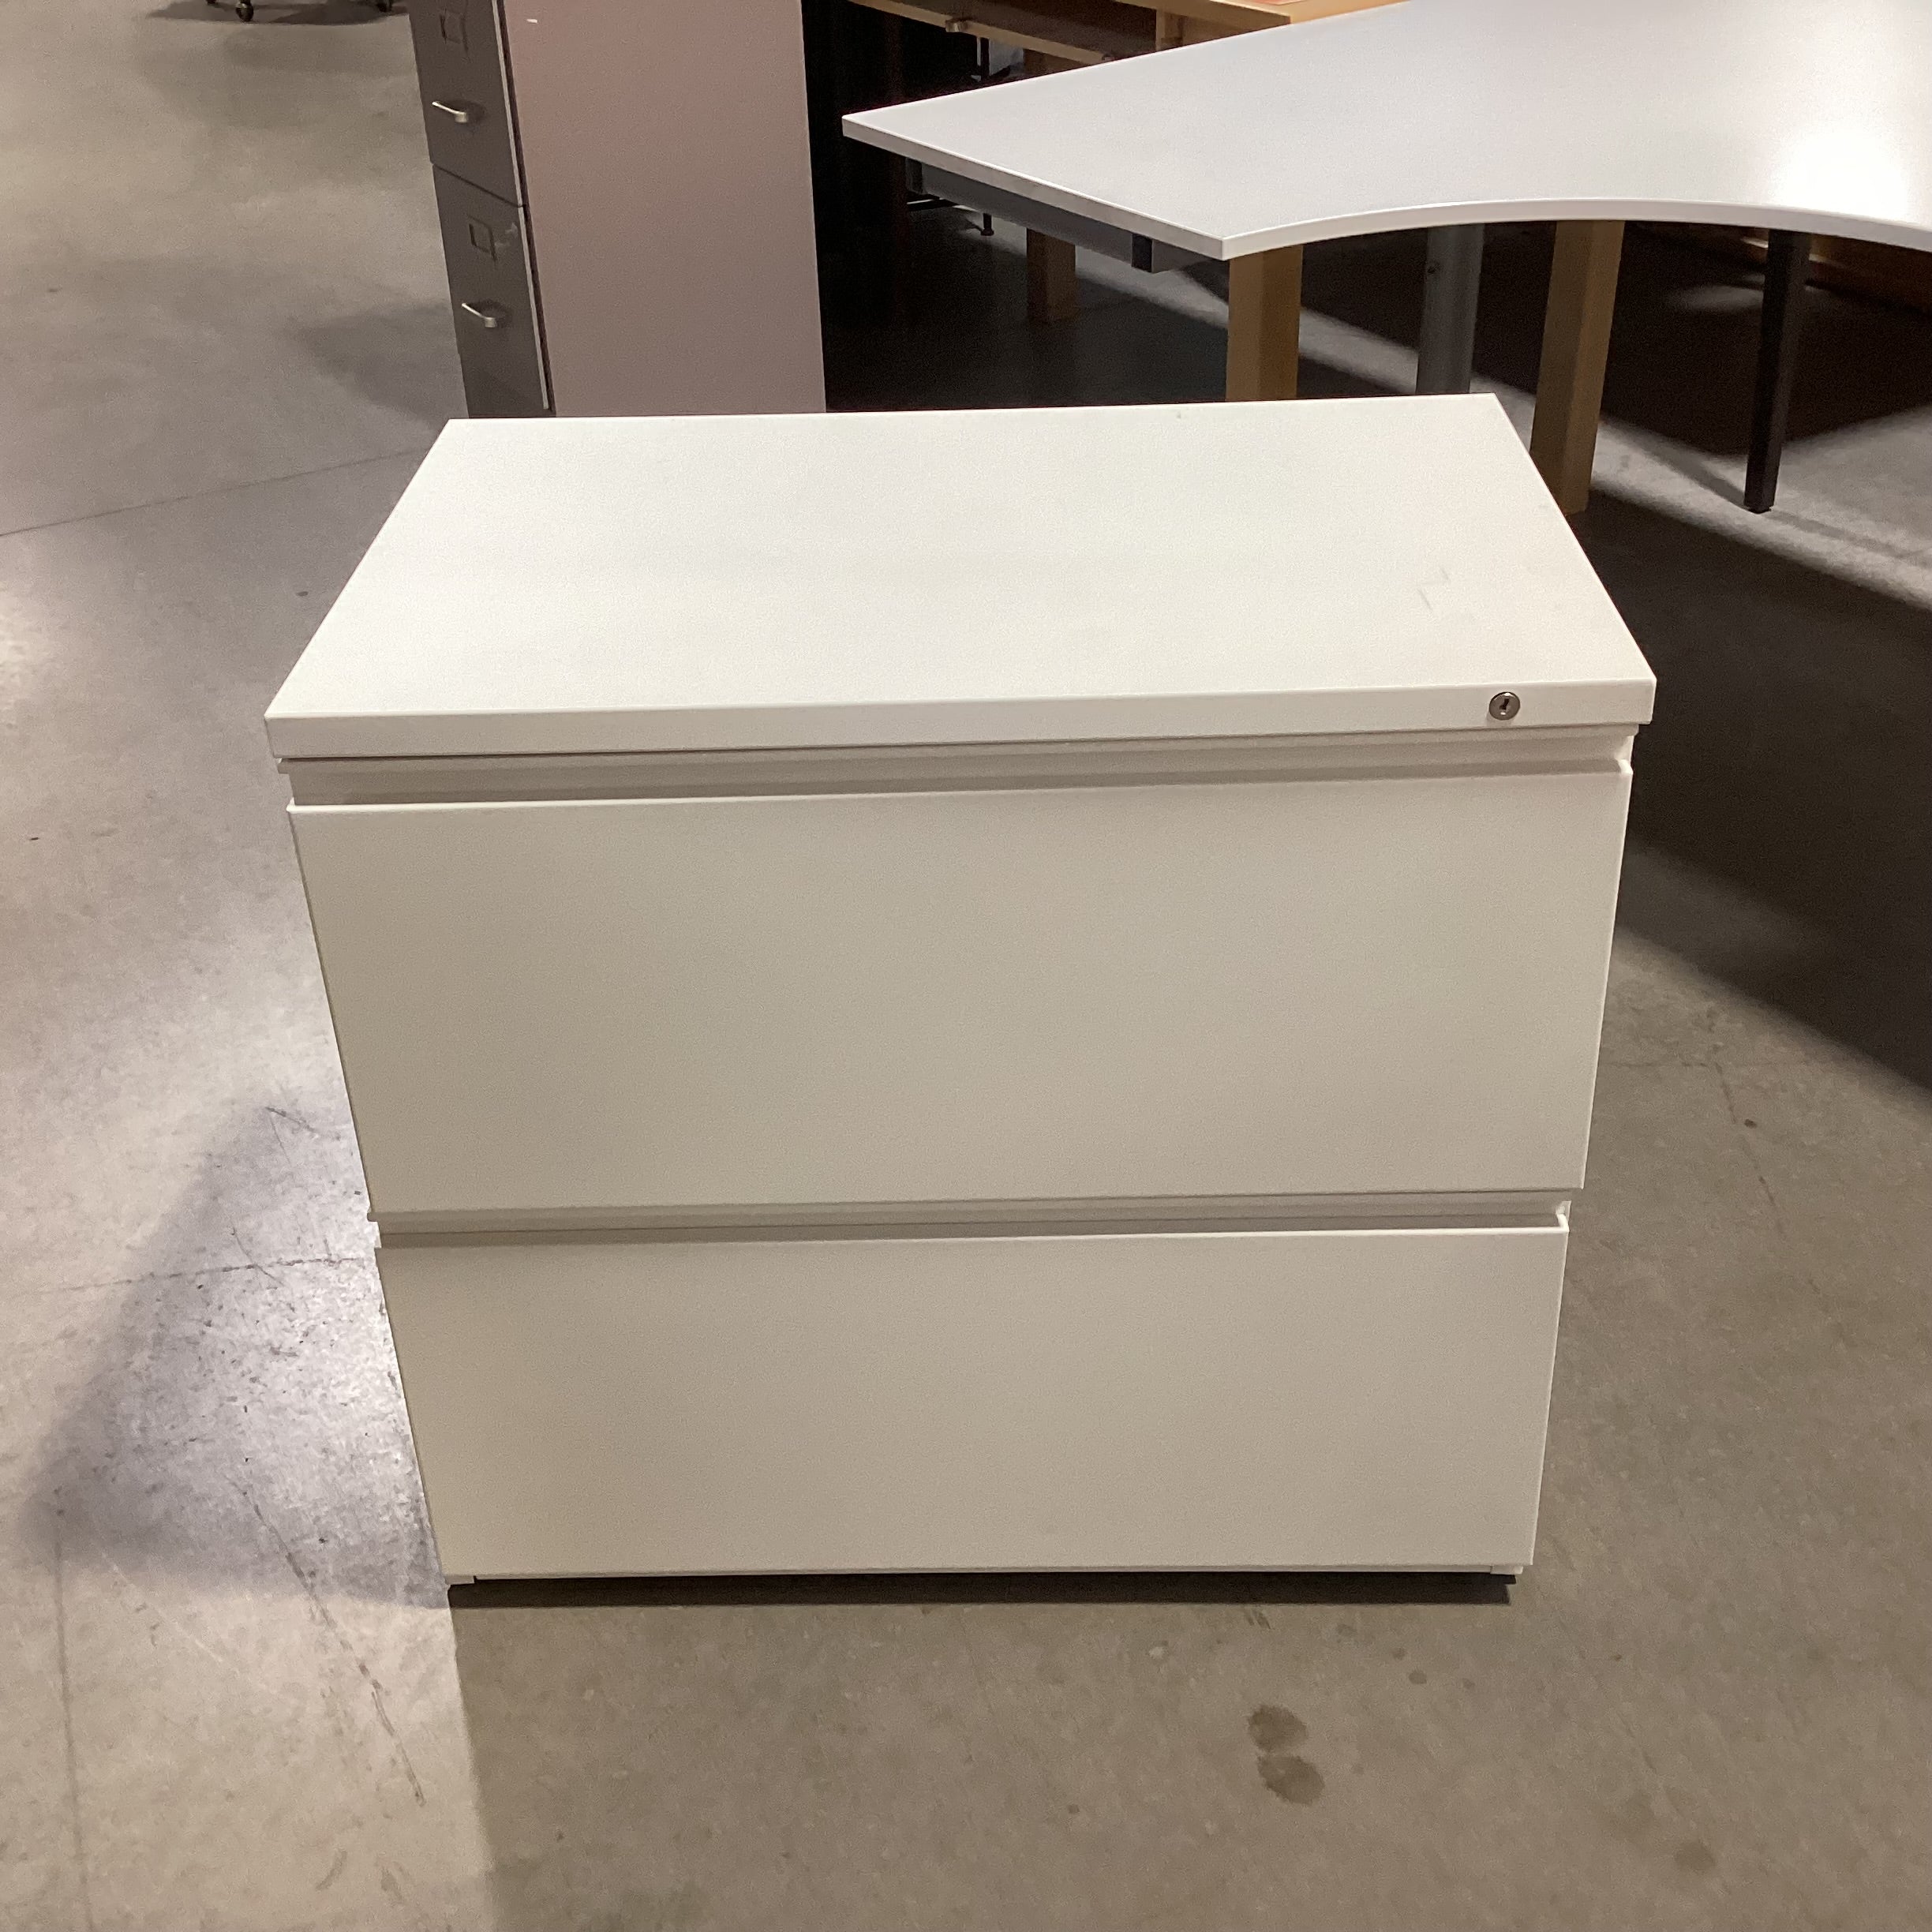 White Metal 2 Drawer File Cabinet 29.5"x 19.5"x 27"